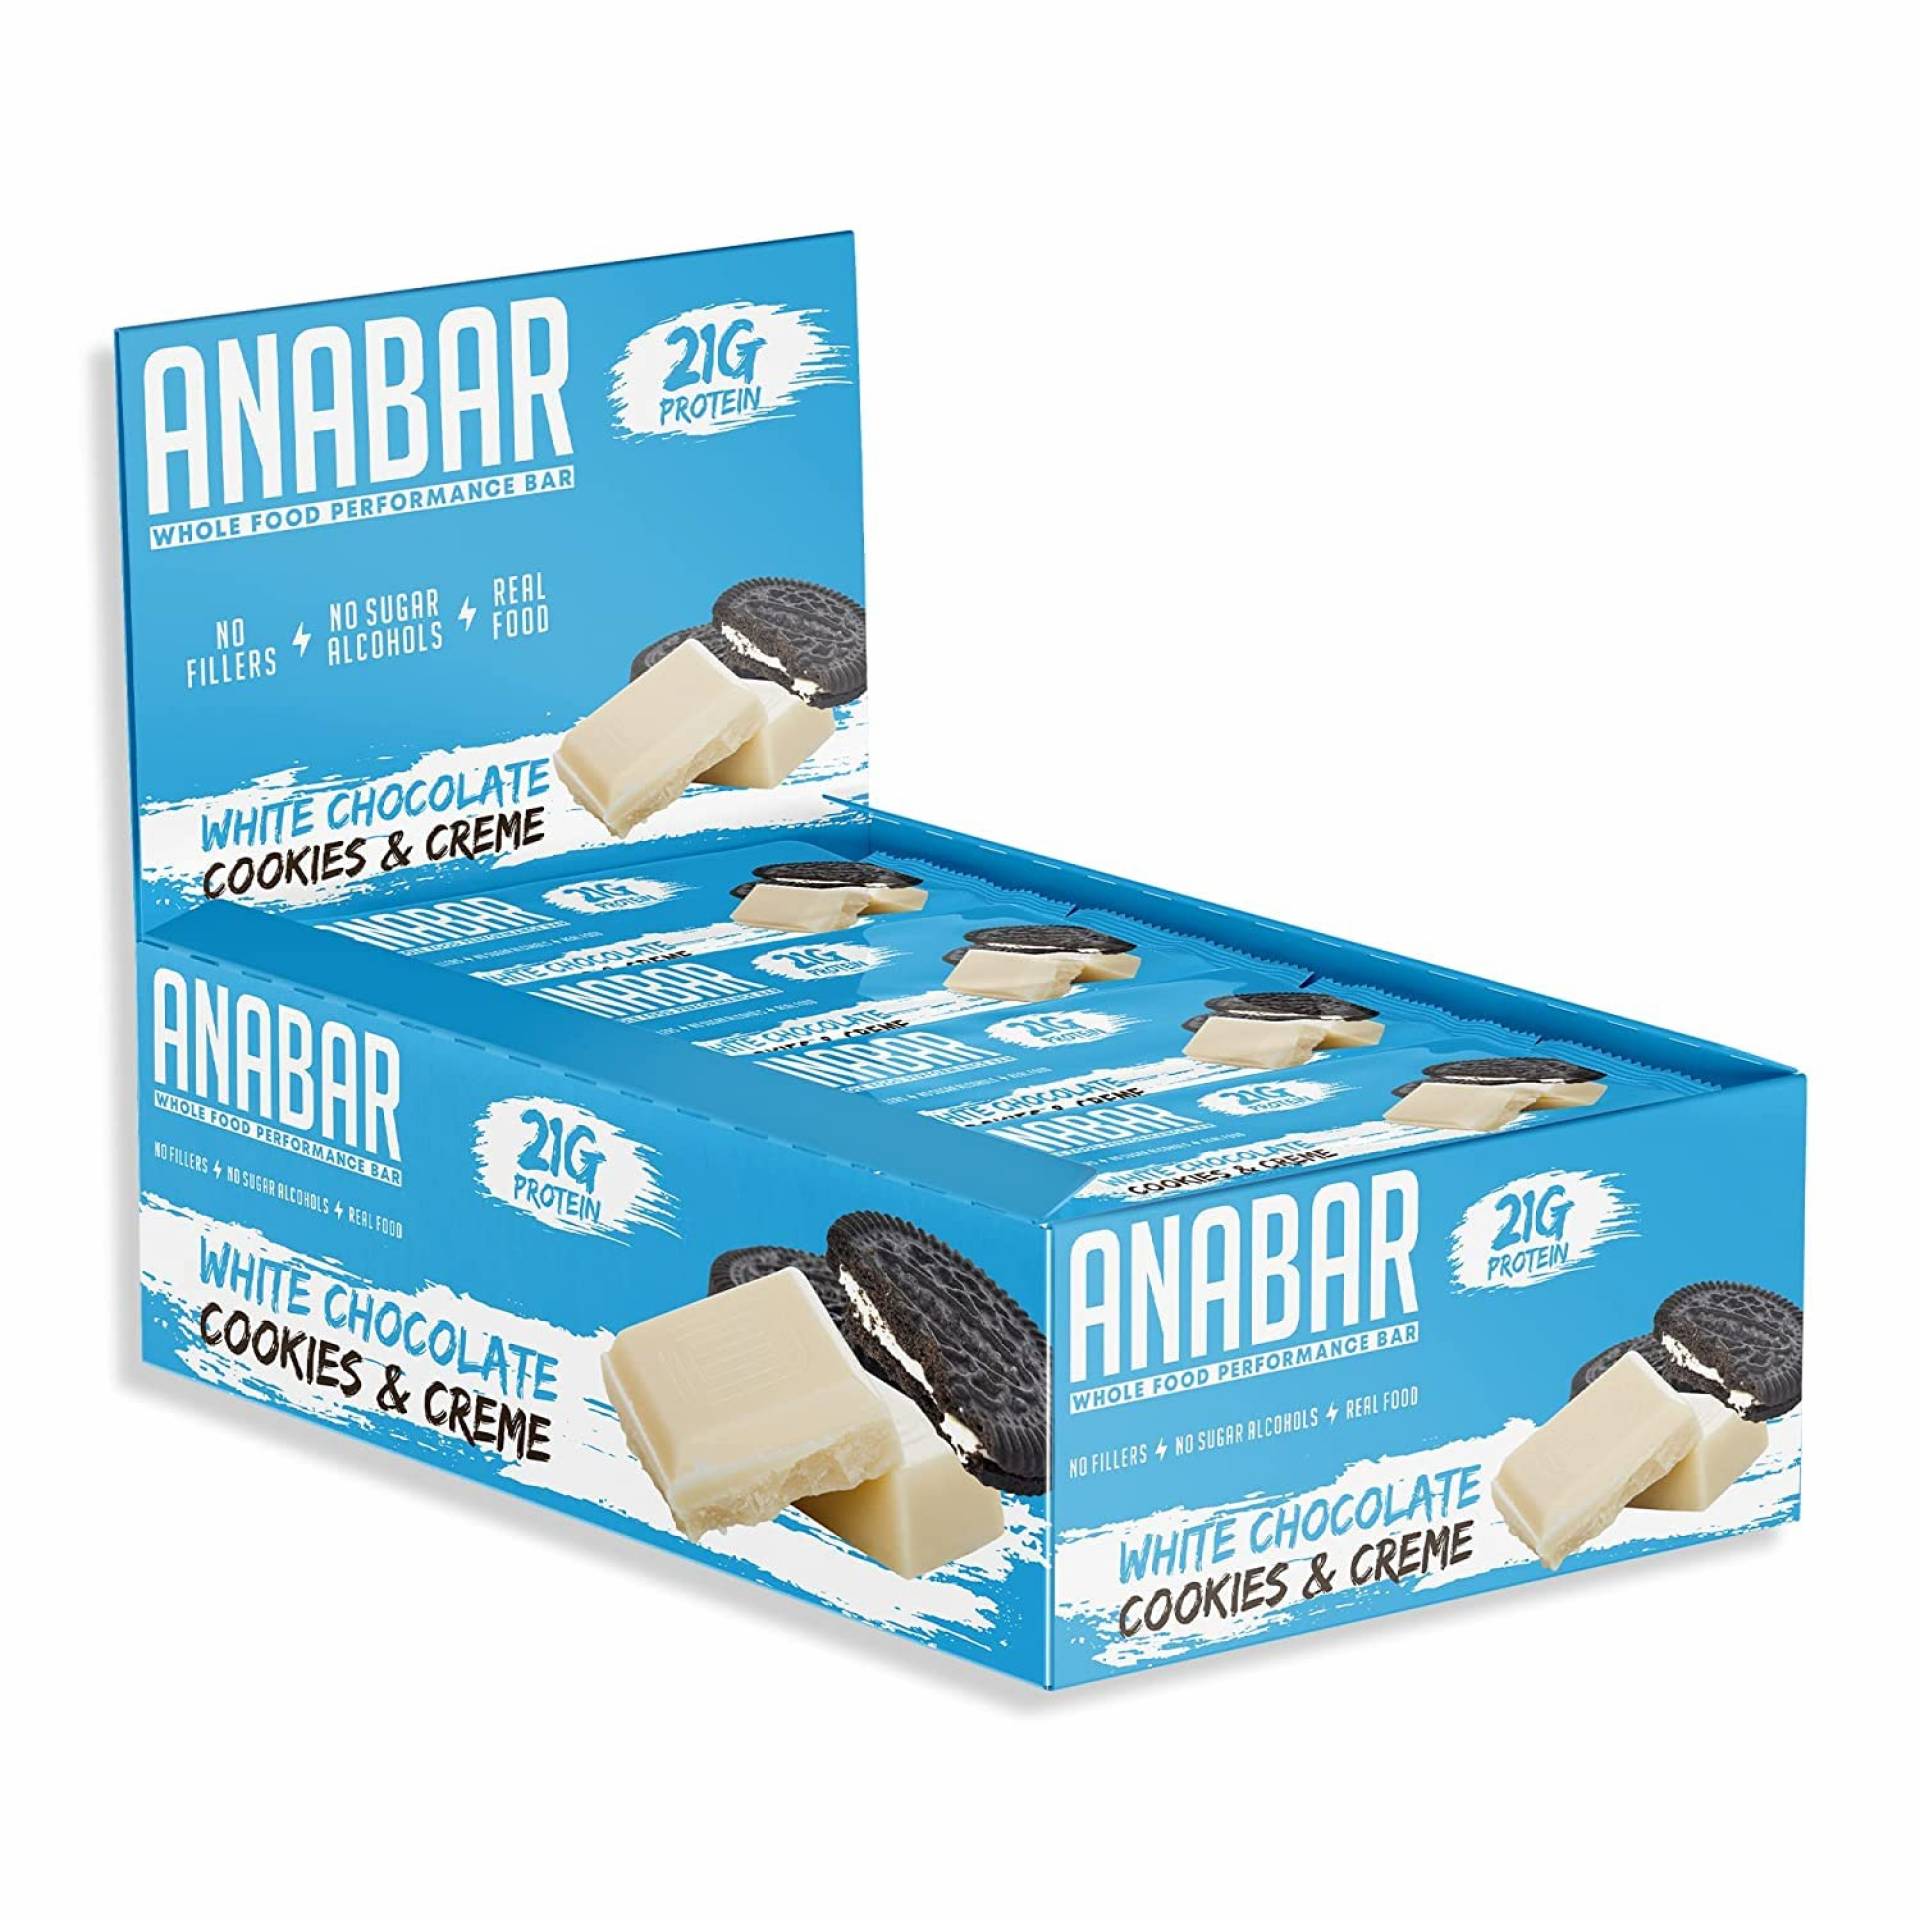 Anabar Protein Bars - $4.49